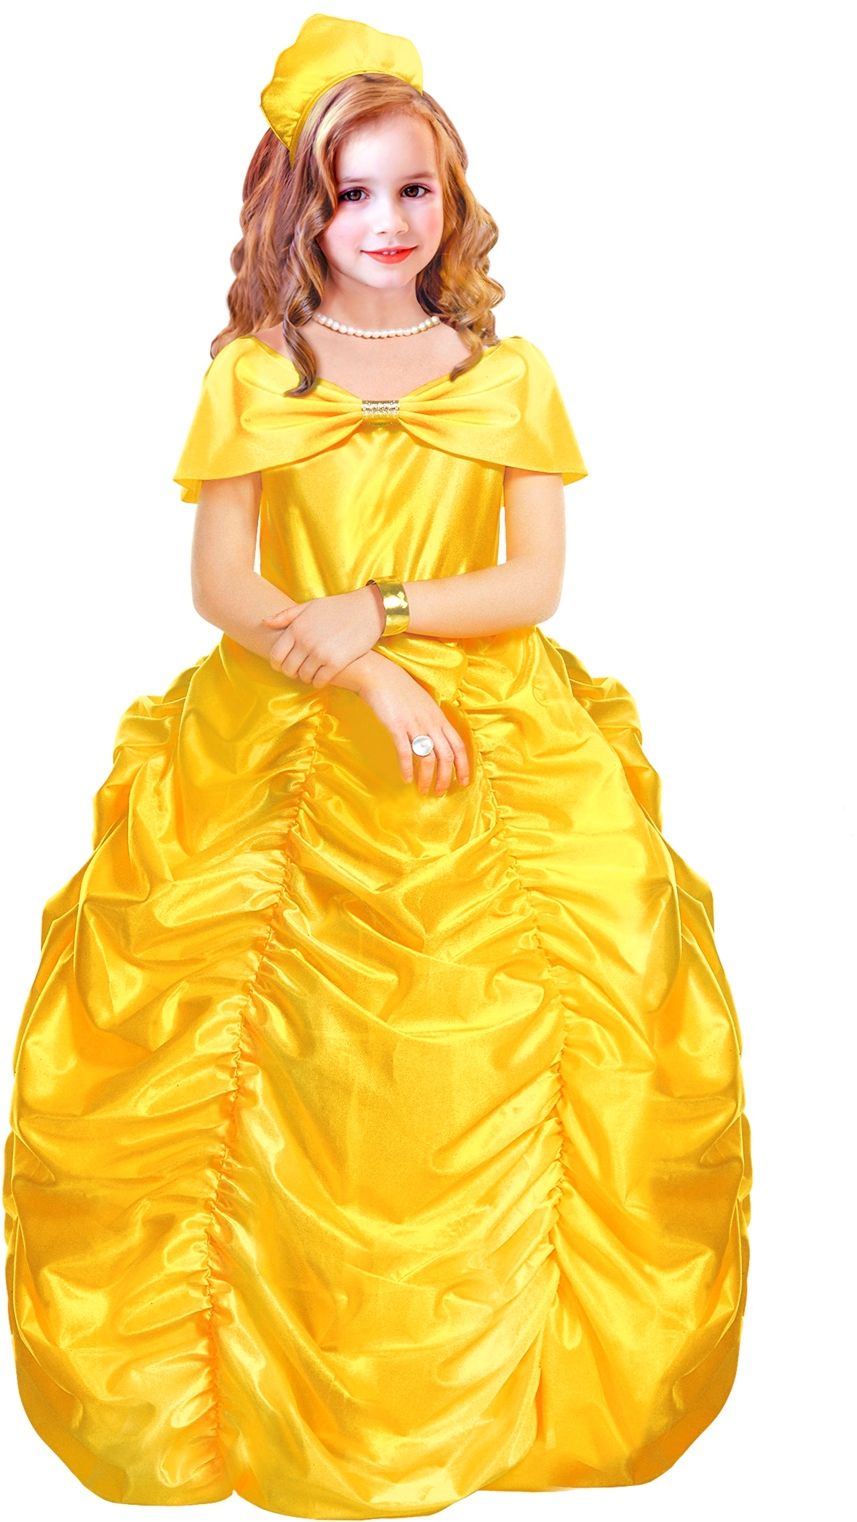 Grote gele jurk kind